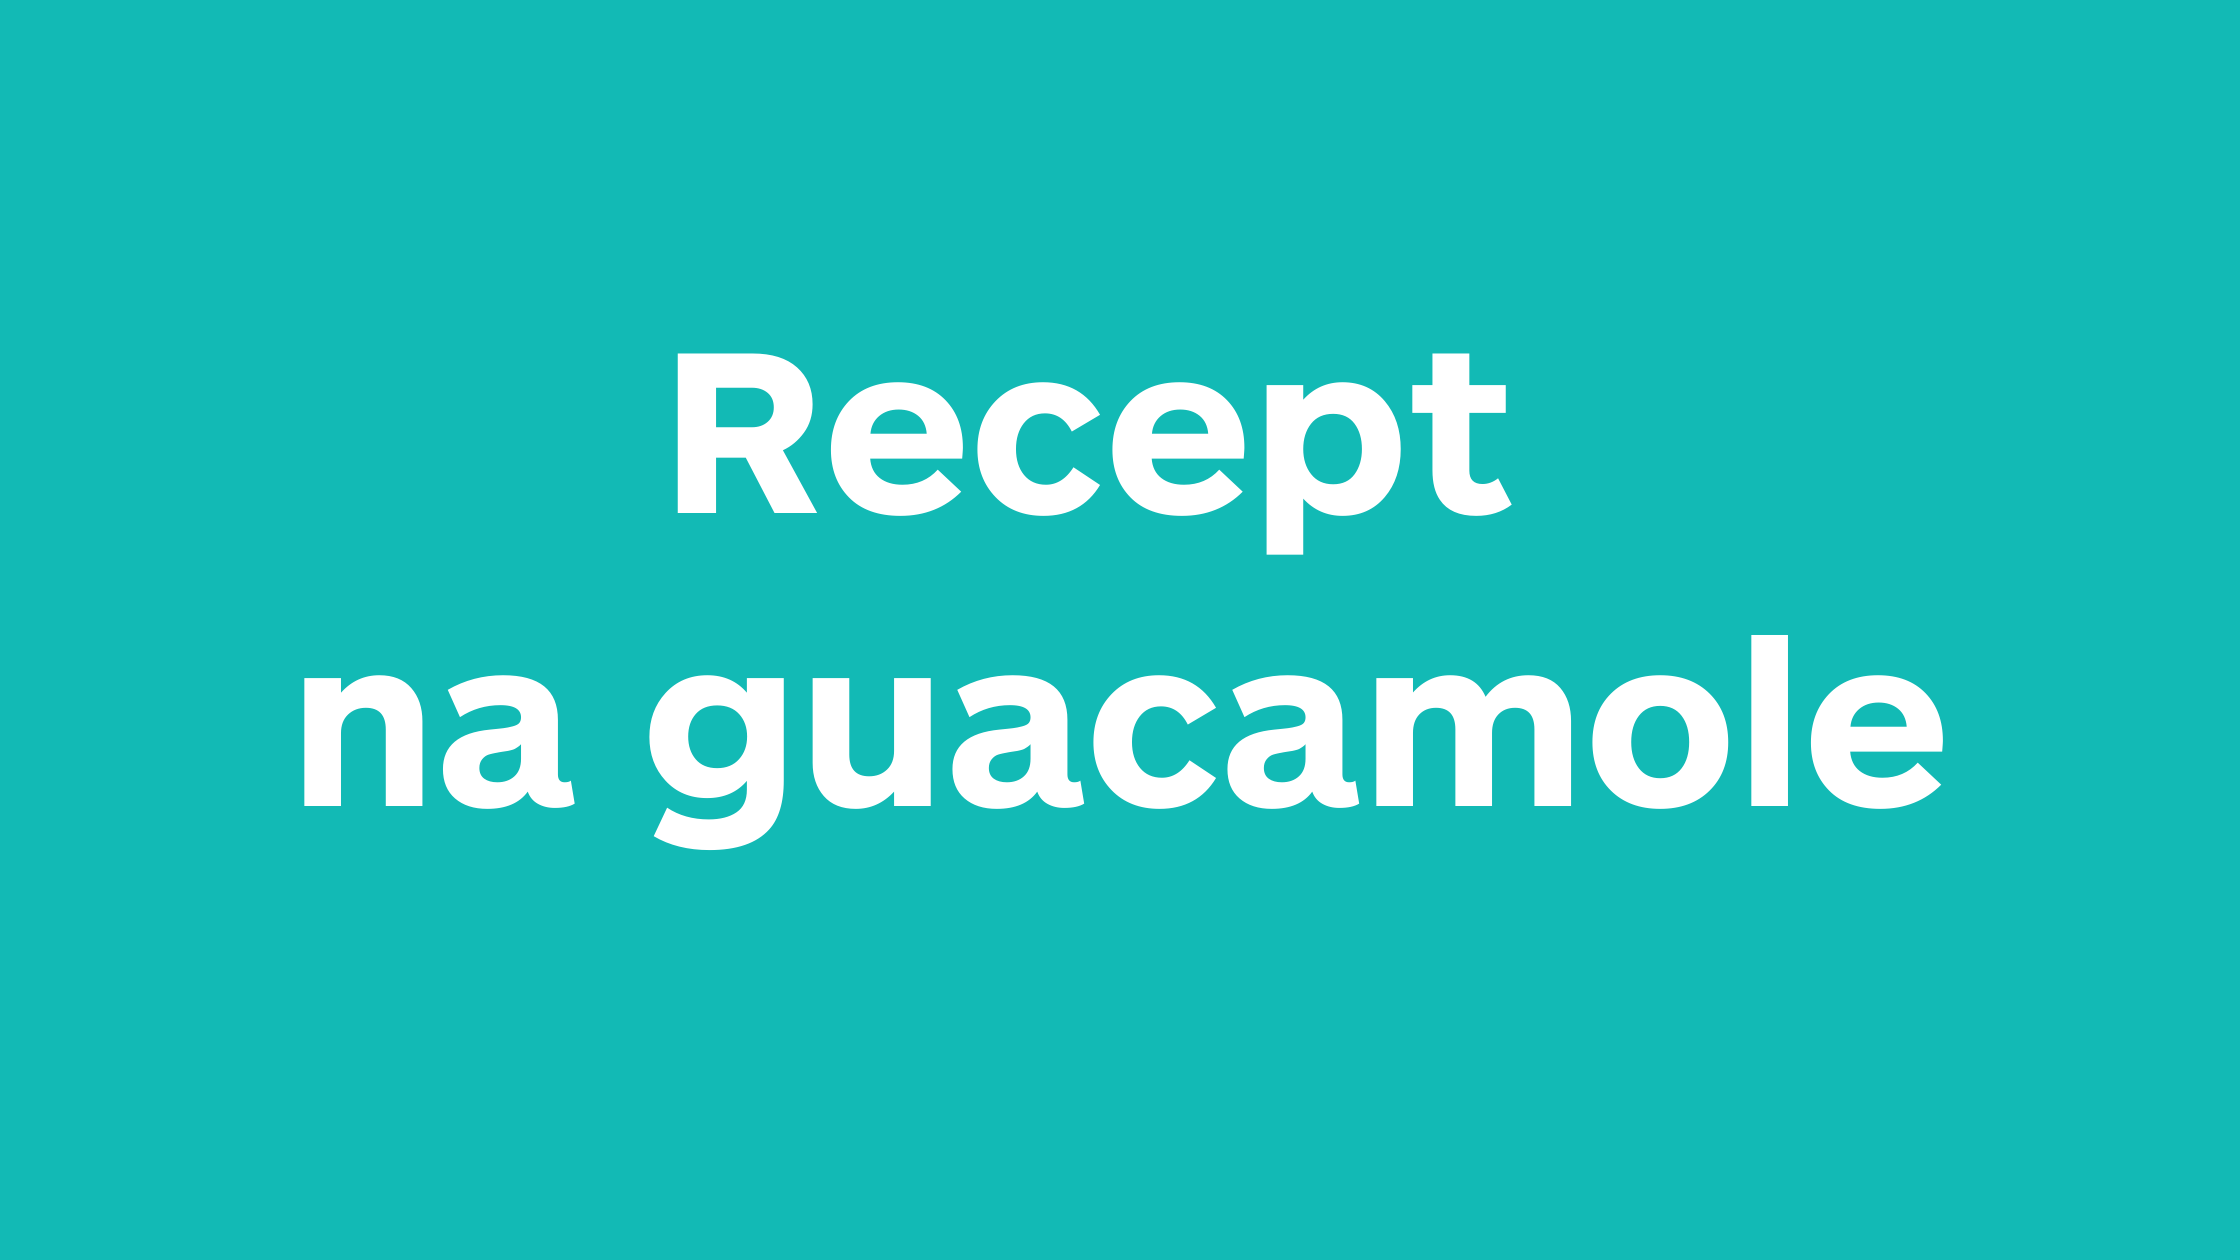 Haciendo guacamole - recept na guacamole